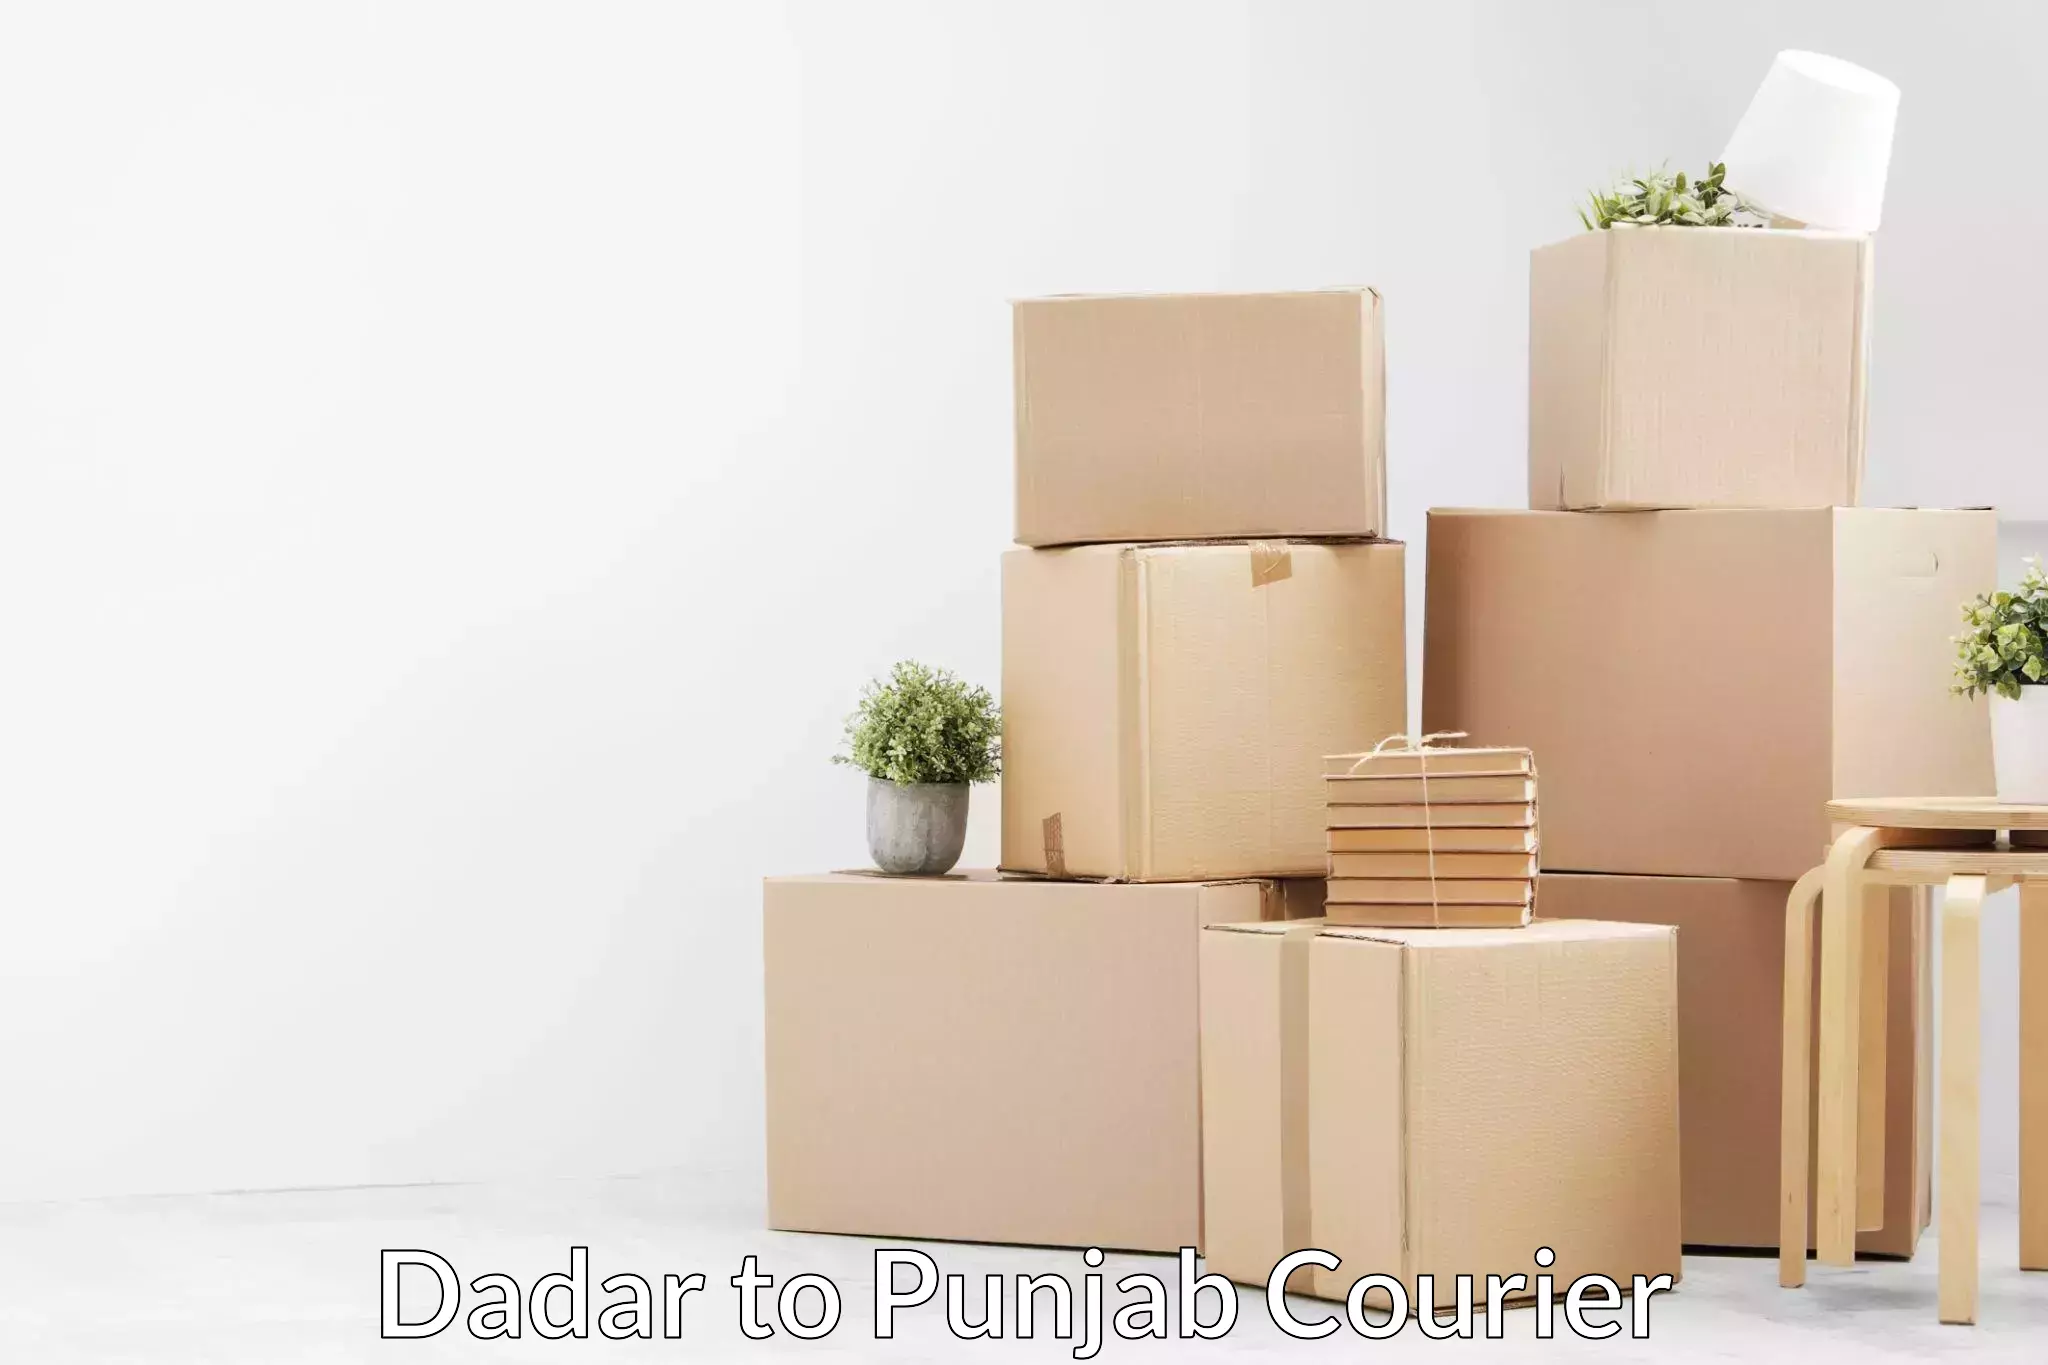 Furniture delivery service Dadar to Central University of Punjab Bathinda